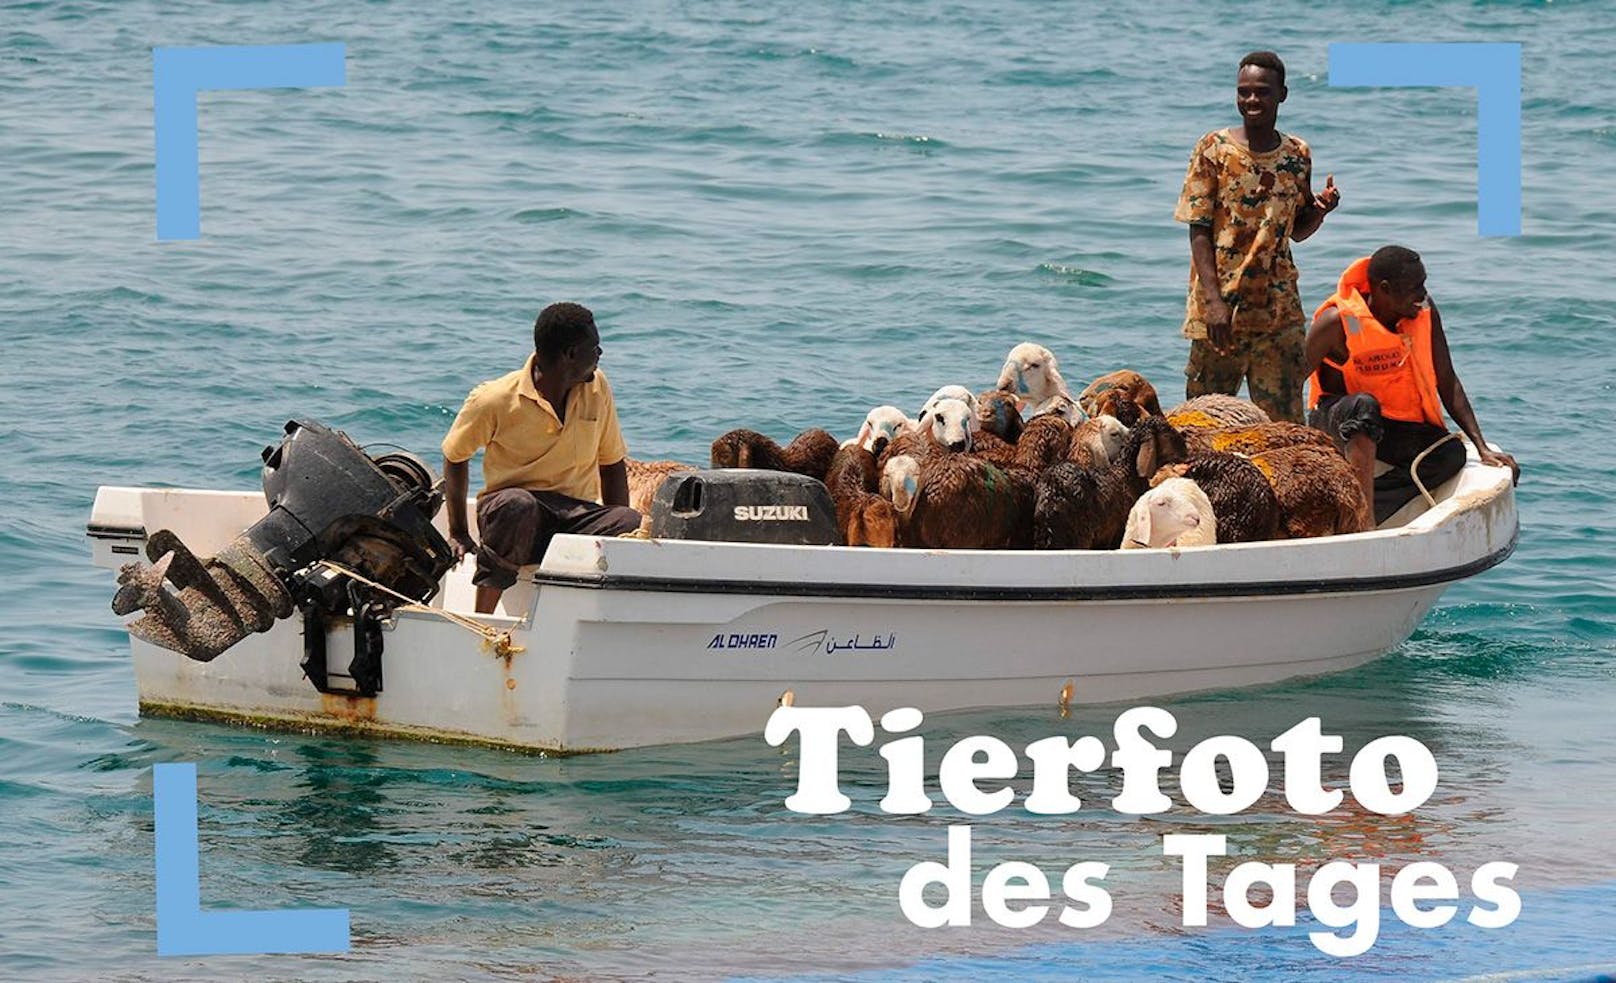 Sie haben überlebt! Kurz nach Auslaufen aus dem sudanesischen Hafen Suakin am Roten Meer ging das vollkommen überladene Schiff am Samstagabend 16.000 Schafen unter. Der Laderaum war laut Medienberichten nur für 8.000 Tiere zugelassen. Die Besatzung konnte gerettet werden, die meisten Tiere ertranken qualvoll.